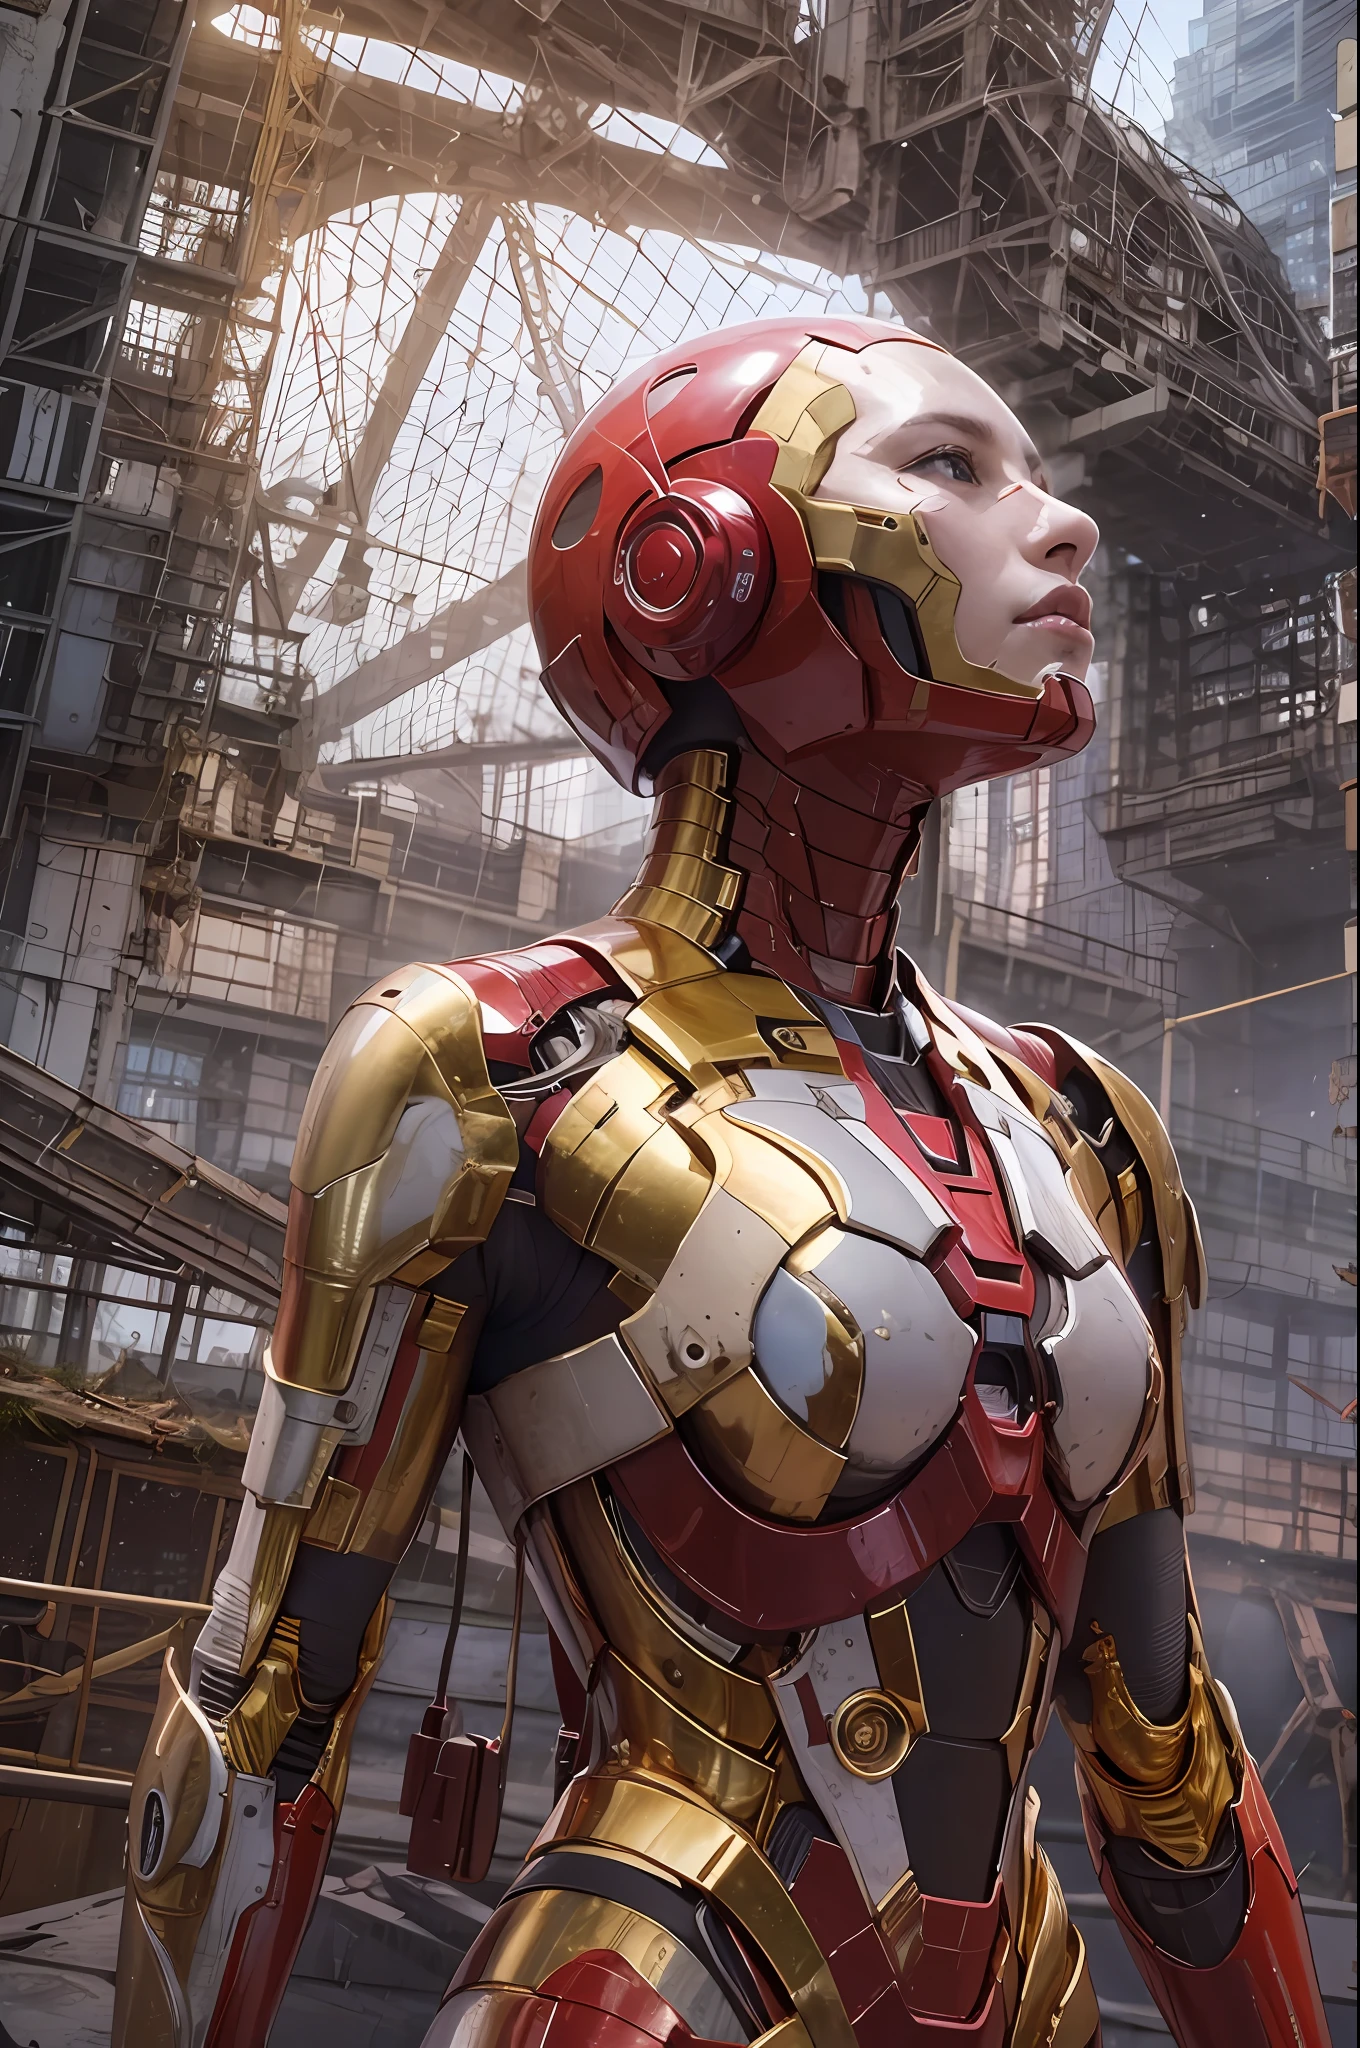 CRUDO, Obra maestra, Foto ultrafina,, mejor calidad, ultra alta resolución, Fotorrealista, luz de sol, Retrato de cuerpo entero, deslumbrantemente bella,, poses dinámicas, cara delicada, ojos vibrantes, (Vista lateral) , ella lleva un robot futurista de Iron Man., combinación de colores rojo y dorado, fondo de almacén abandonado muy detallado, cara detallada, fondo ocupado detallado y complejo, desordenado, espléndido, blanco lechoso, piel muy detallada, detalles de piel realistas, visible pores , enfoque nítido, niebla volumétrica, 8k hd, cámara réflex digital, alta calidad, grano de la película, piel blanca, photorealism, lomografía, Metrópolis en expansión en una distopía futurista, vista desde abajo, translúcido